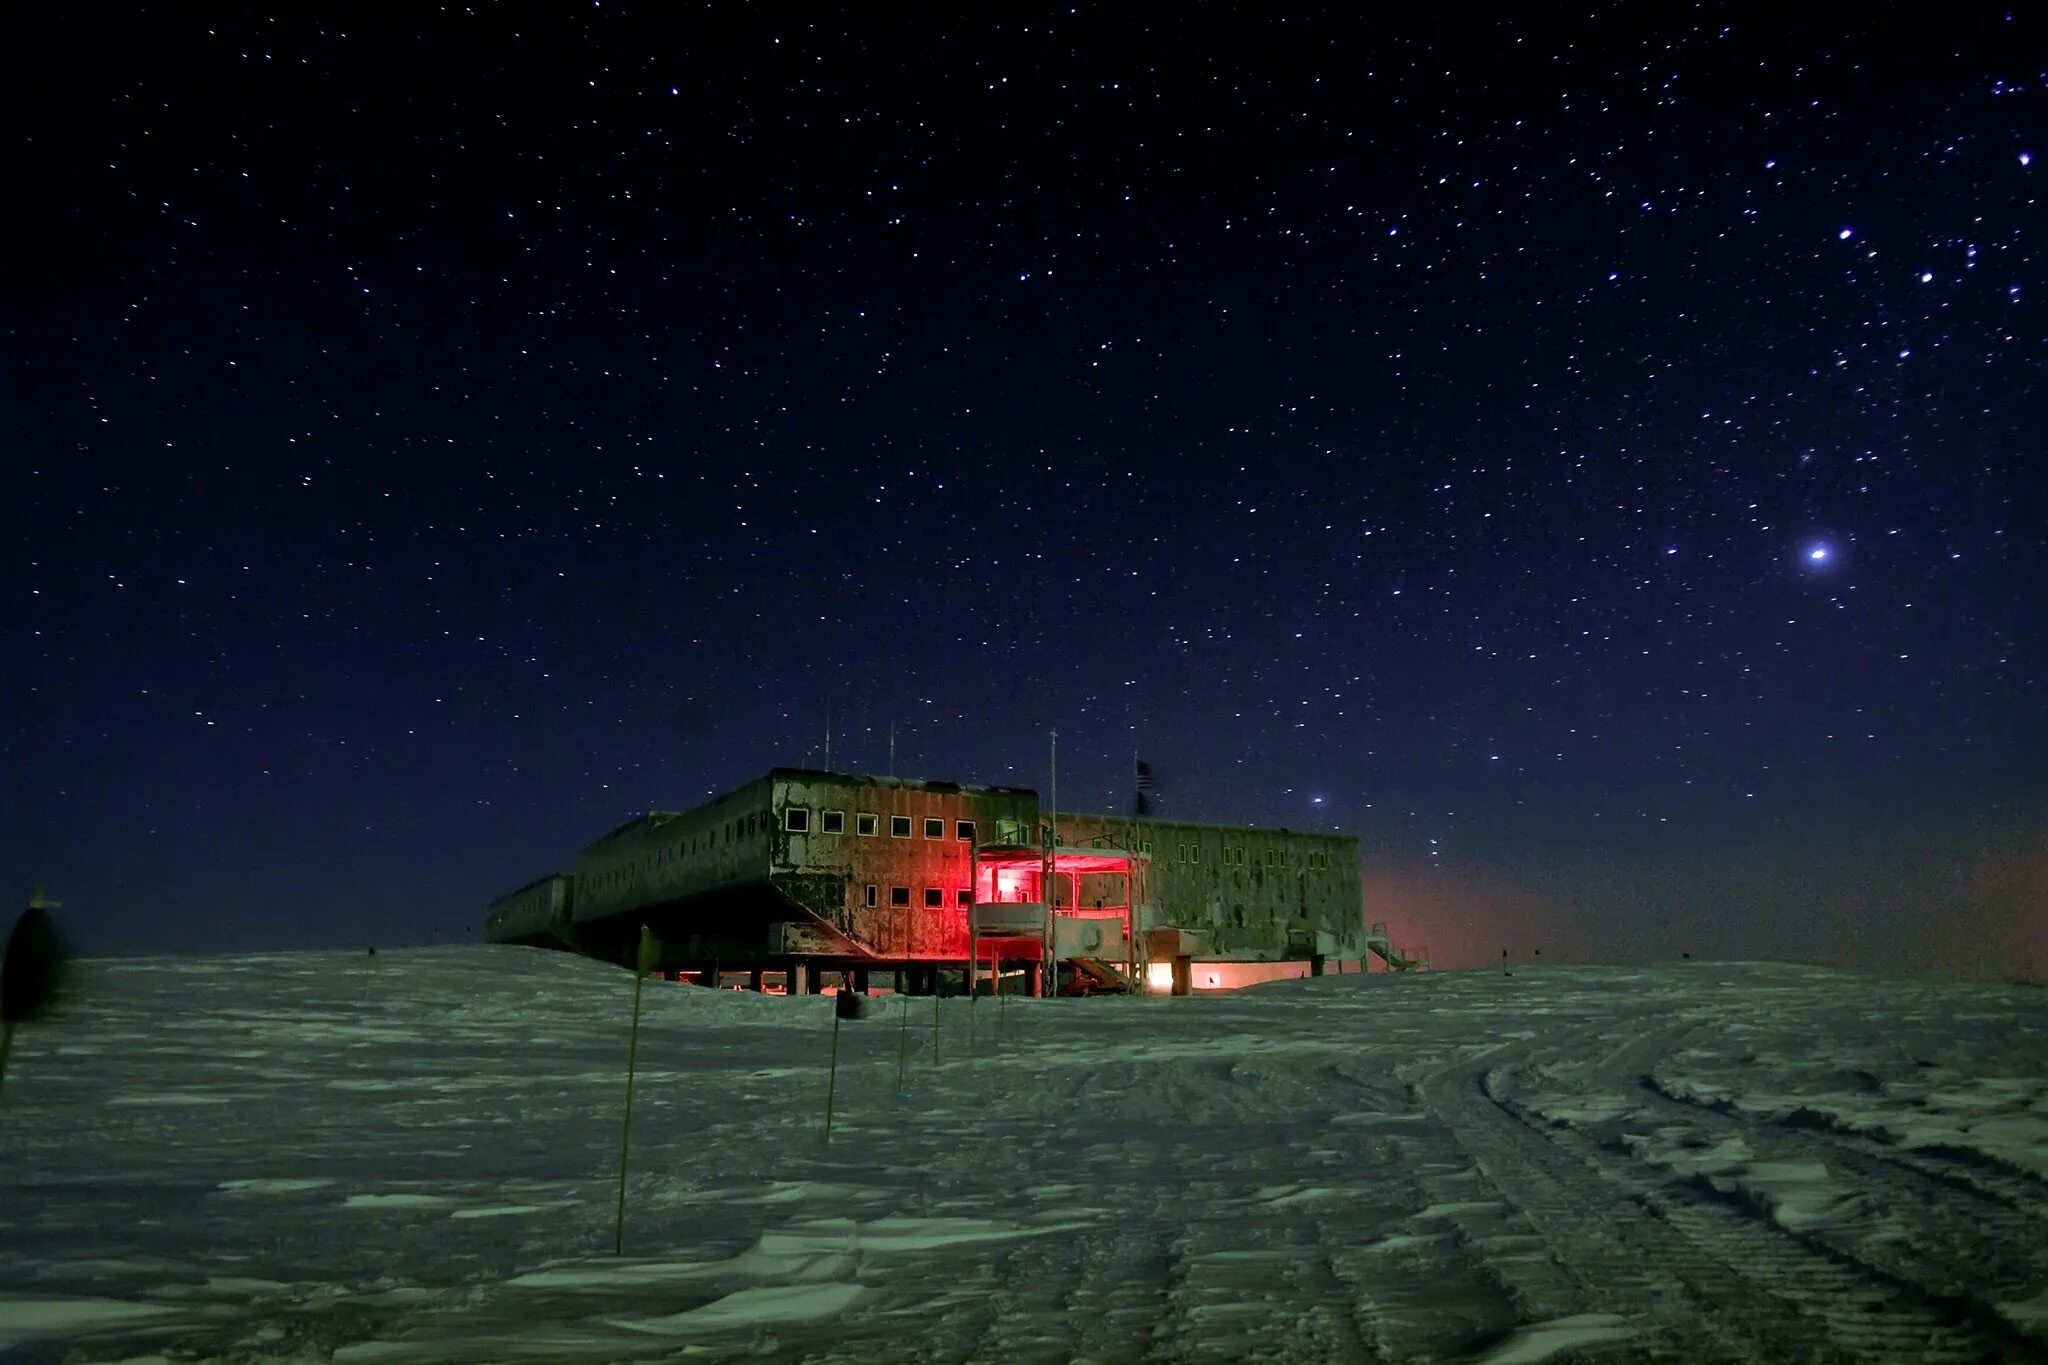 Полярная станция Амундсен-Скотт. Станция Амундсен Скотт в Антарктиде. Полярная ночь в Амундсен-Скотт. Конкордия (антарктическая станция). Включи станцию на ночь